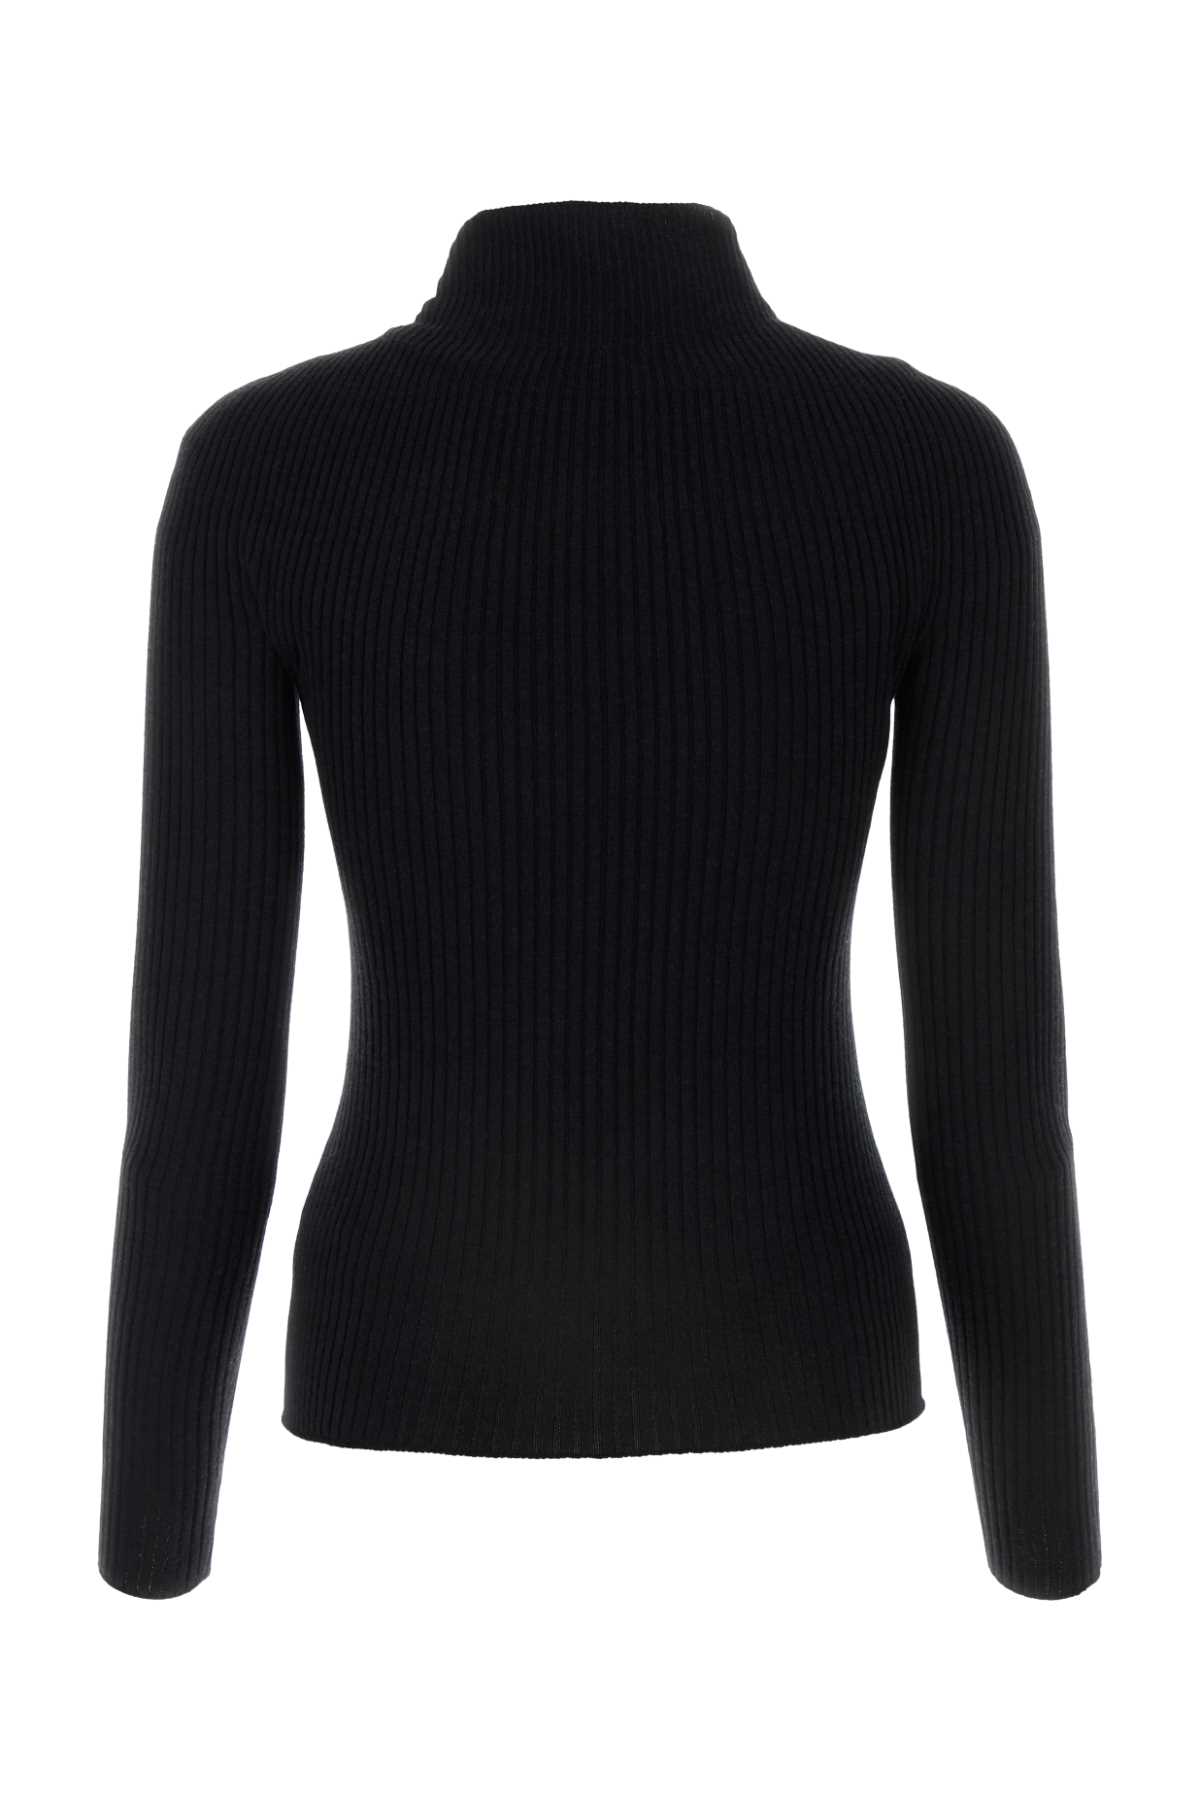 Shop Courrèges Black Cotton Blend Sweater